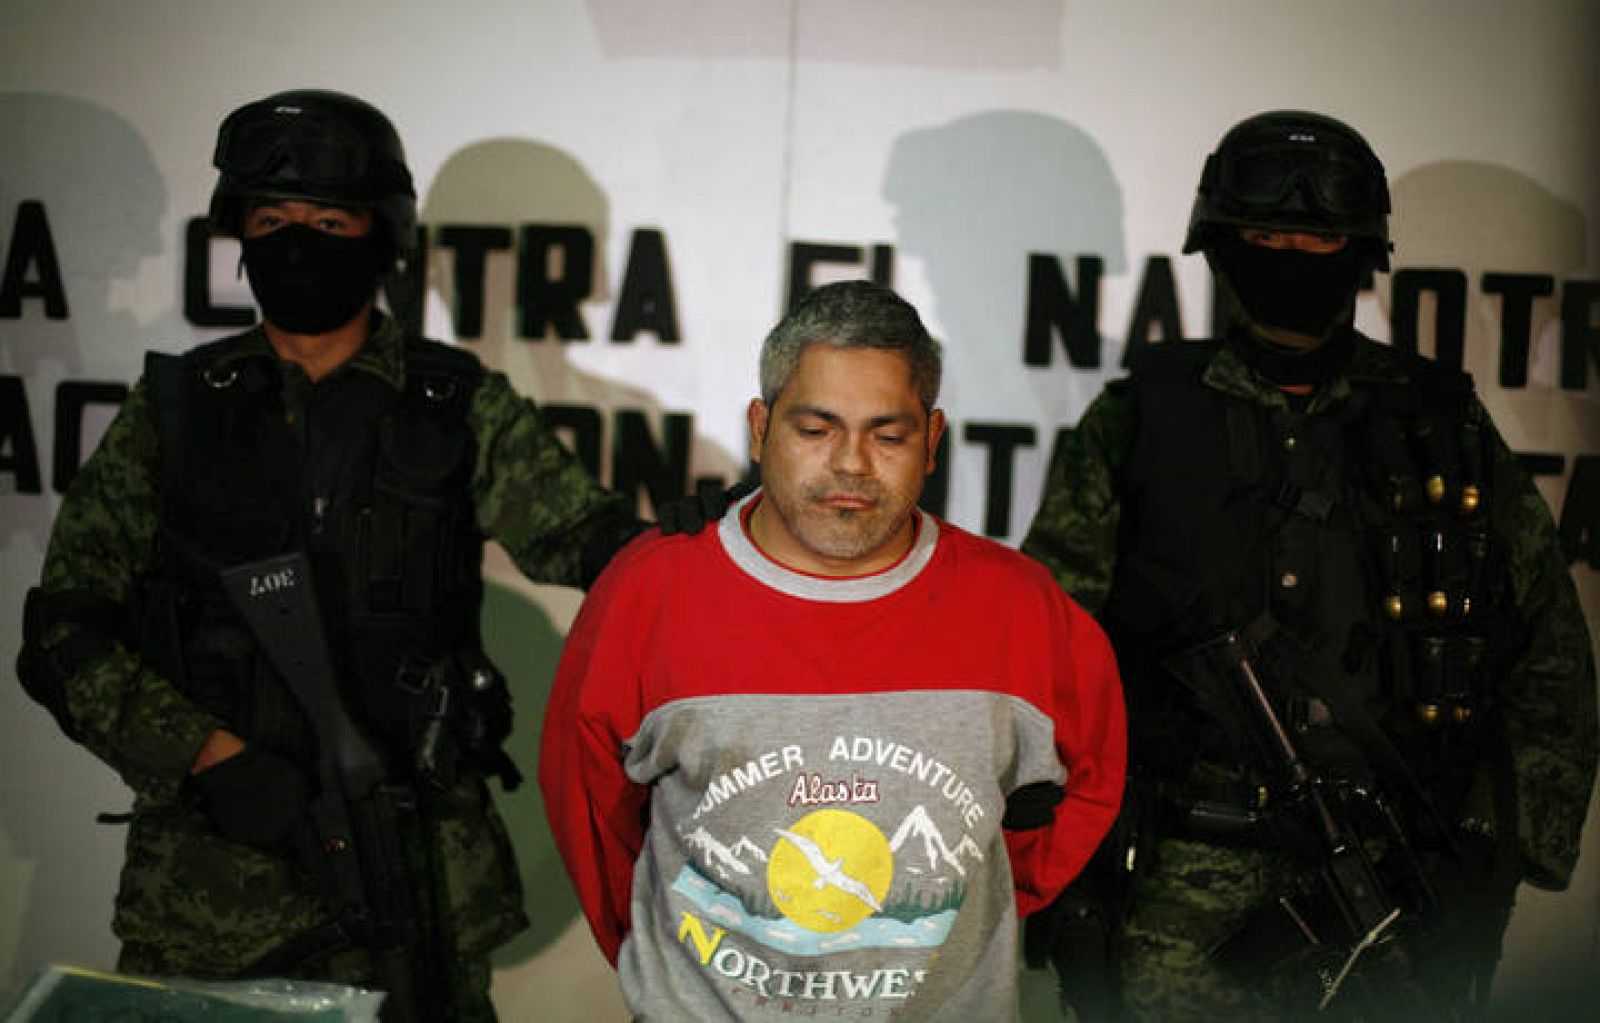 Los Zetas En Mexico